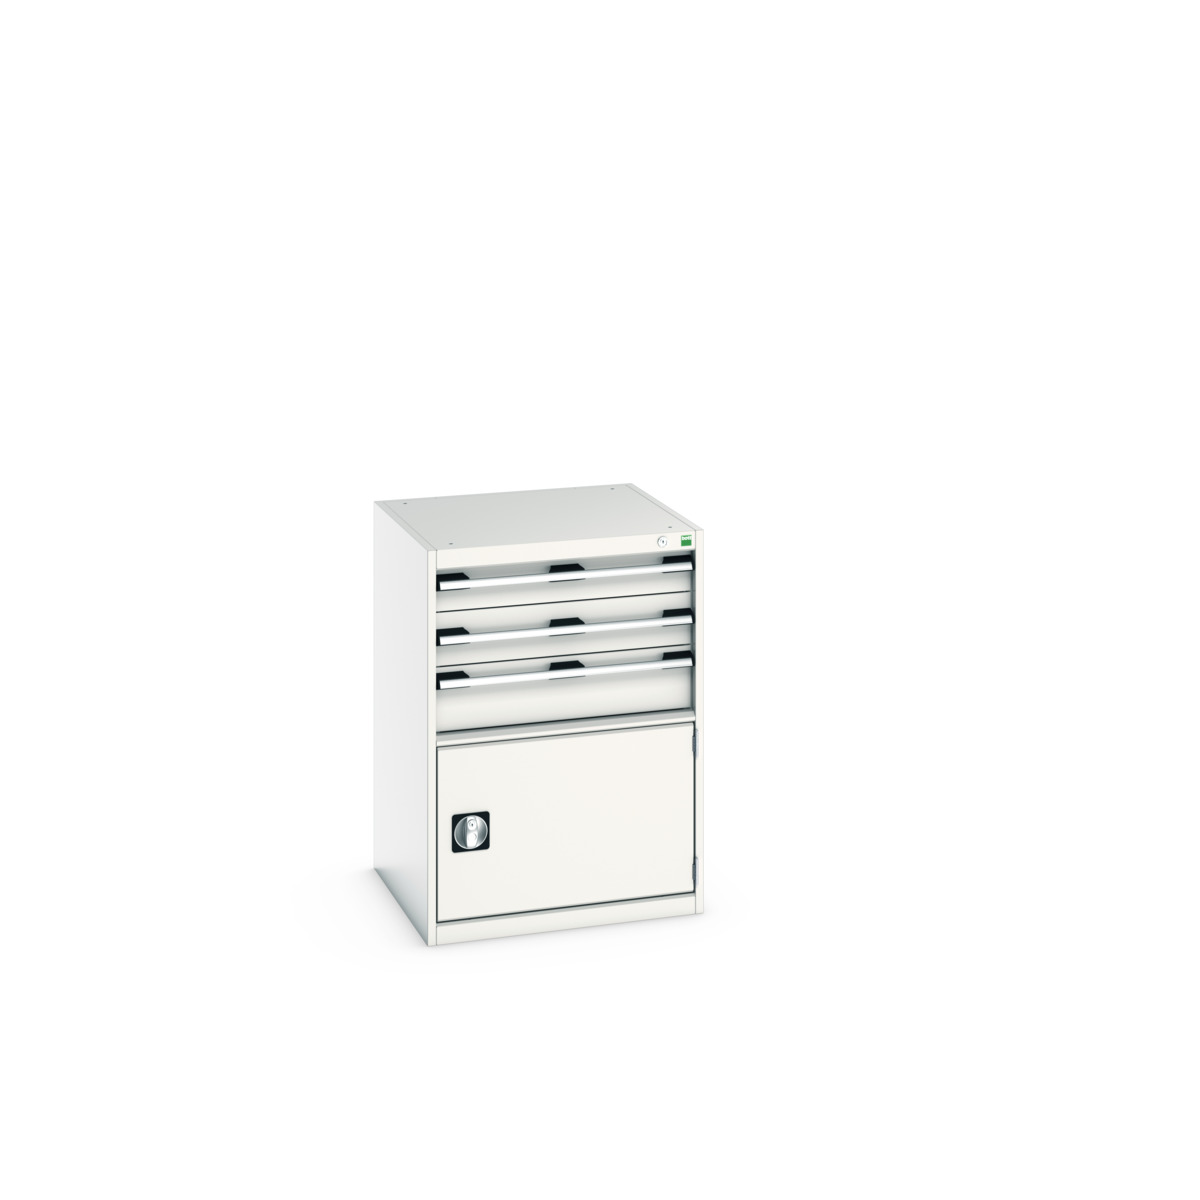 40019043.16V - cubio armoire à tiroirs/porte SL-669-4.1